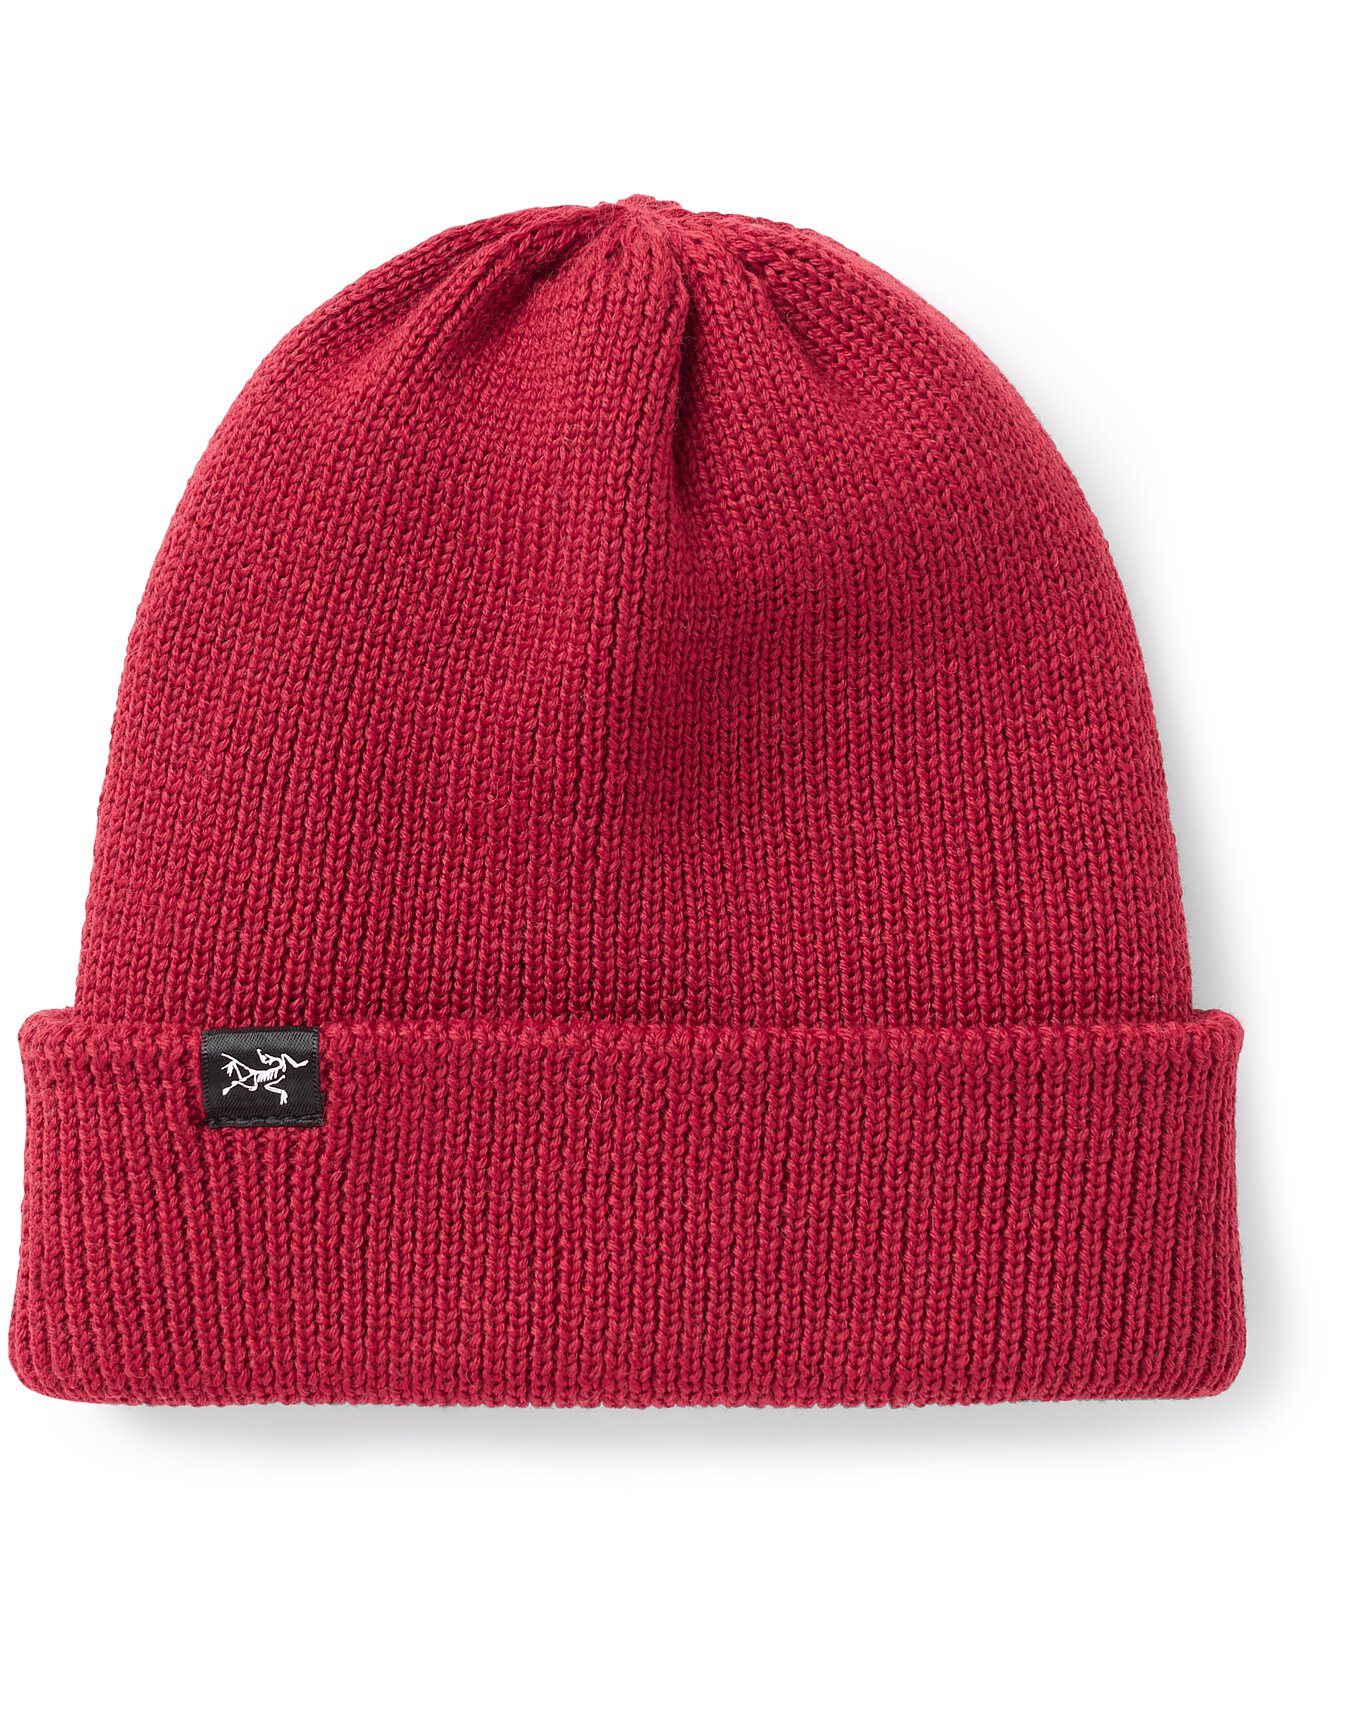 紅色 ARC'TERYX アークテリクス ニット帽 ビーニー キャップ 帽子 - 帽子